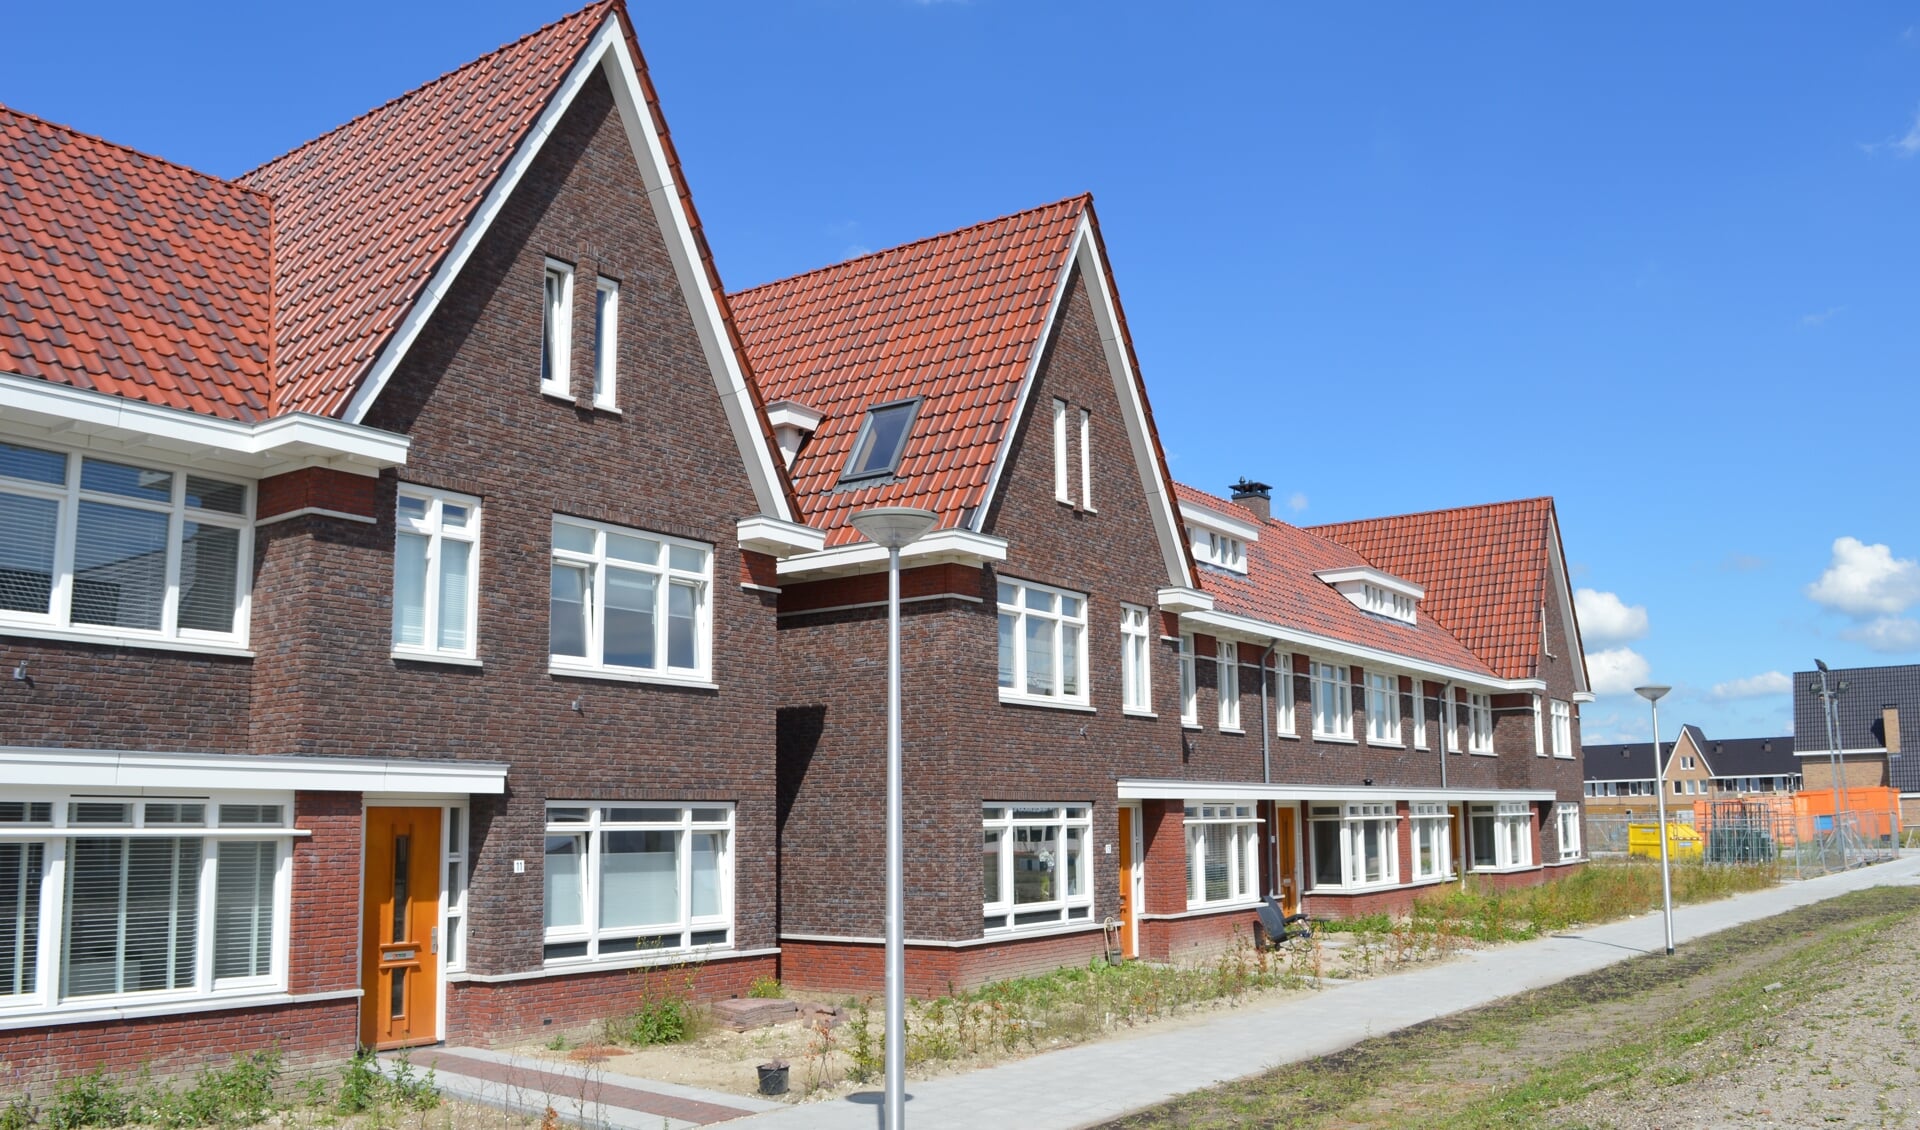 Landelijk bedroeg de gemiddelde WOZ-waarde in januari dit jaar 248.000 euro per woning, de hoogste waarde ooit.